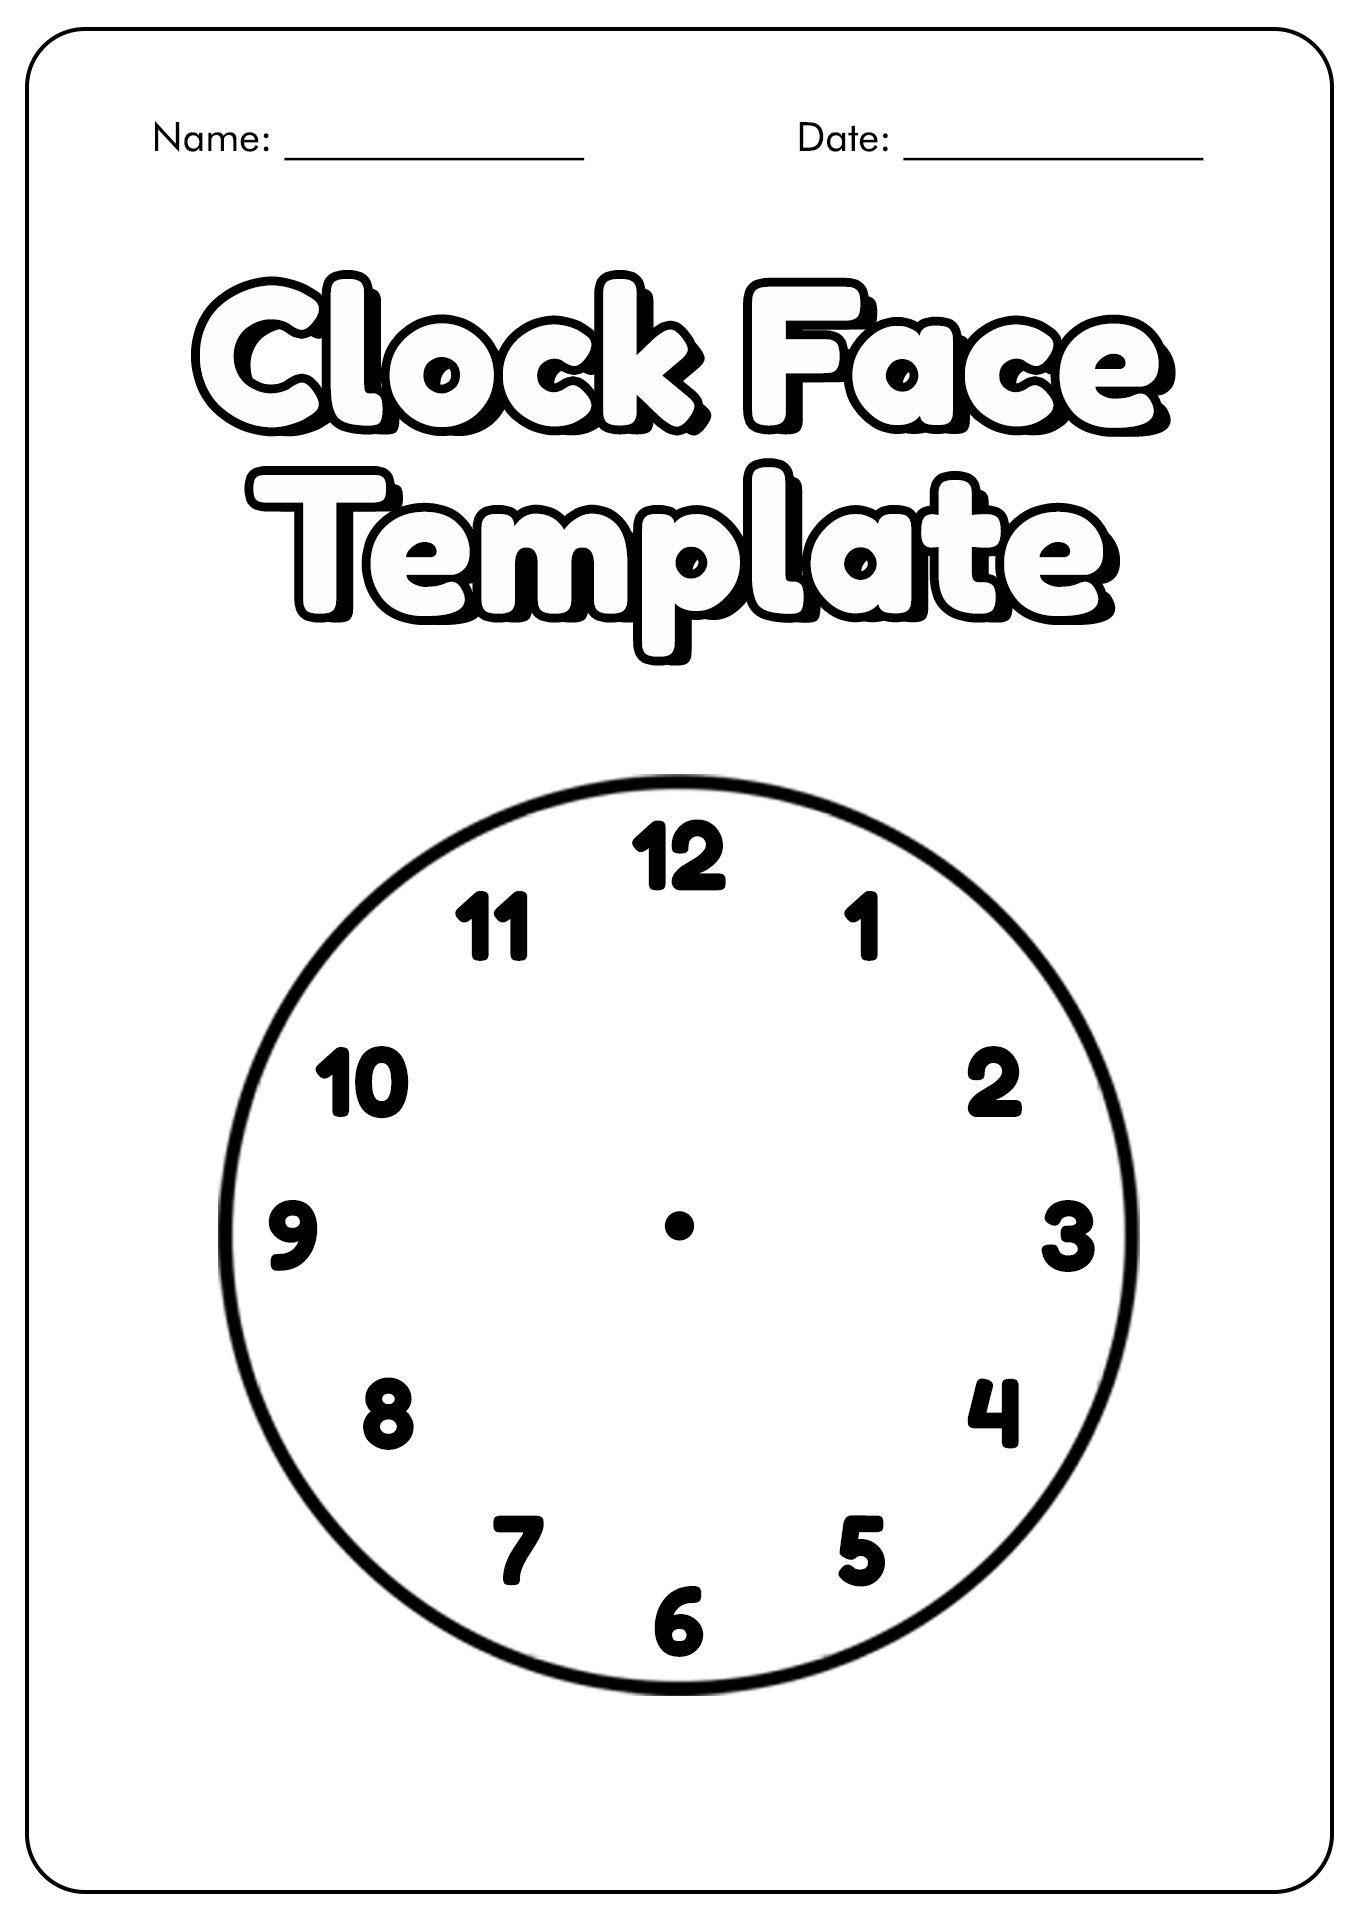 Clock Face Template